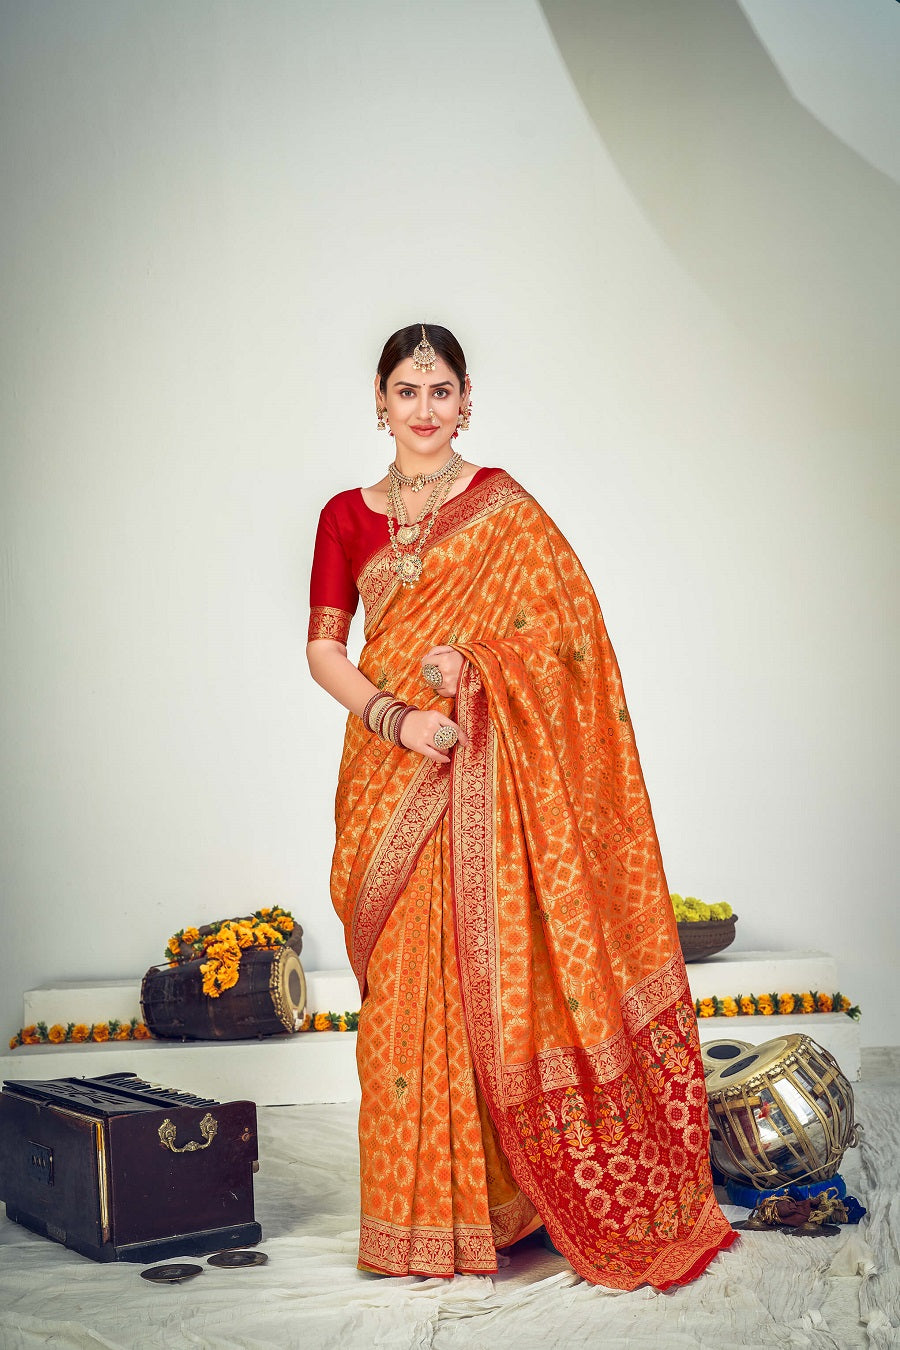 Banarasi saree and blouse